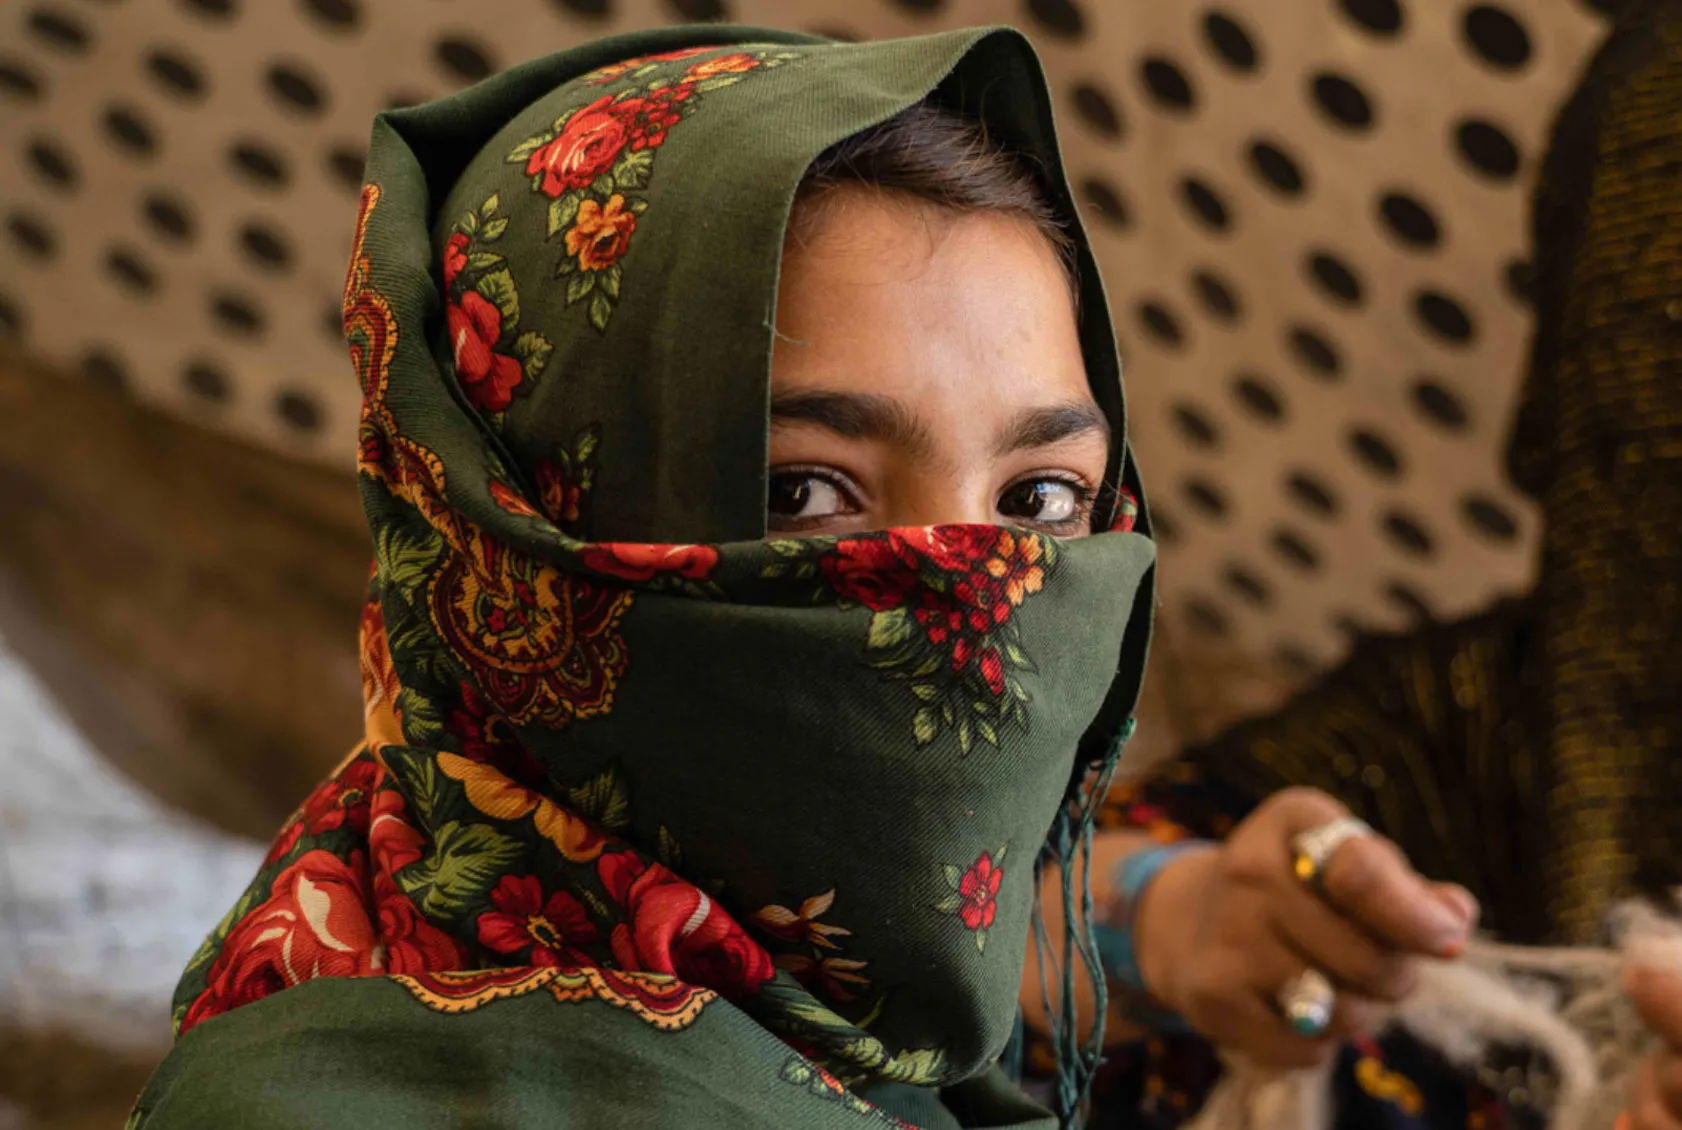 Una joven afgana mira por encima del hombro. La mayor parte de su rostro está cubierto por un pañuelo floral verde y rojo.